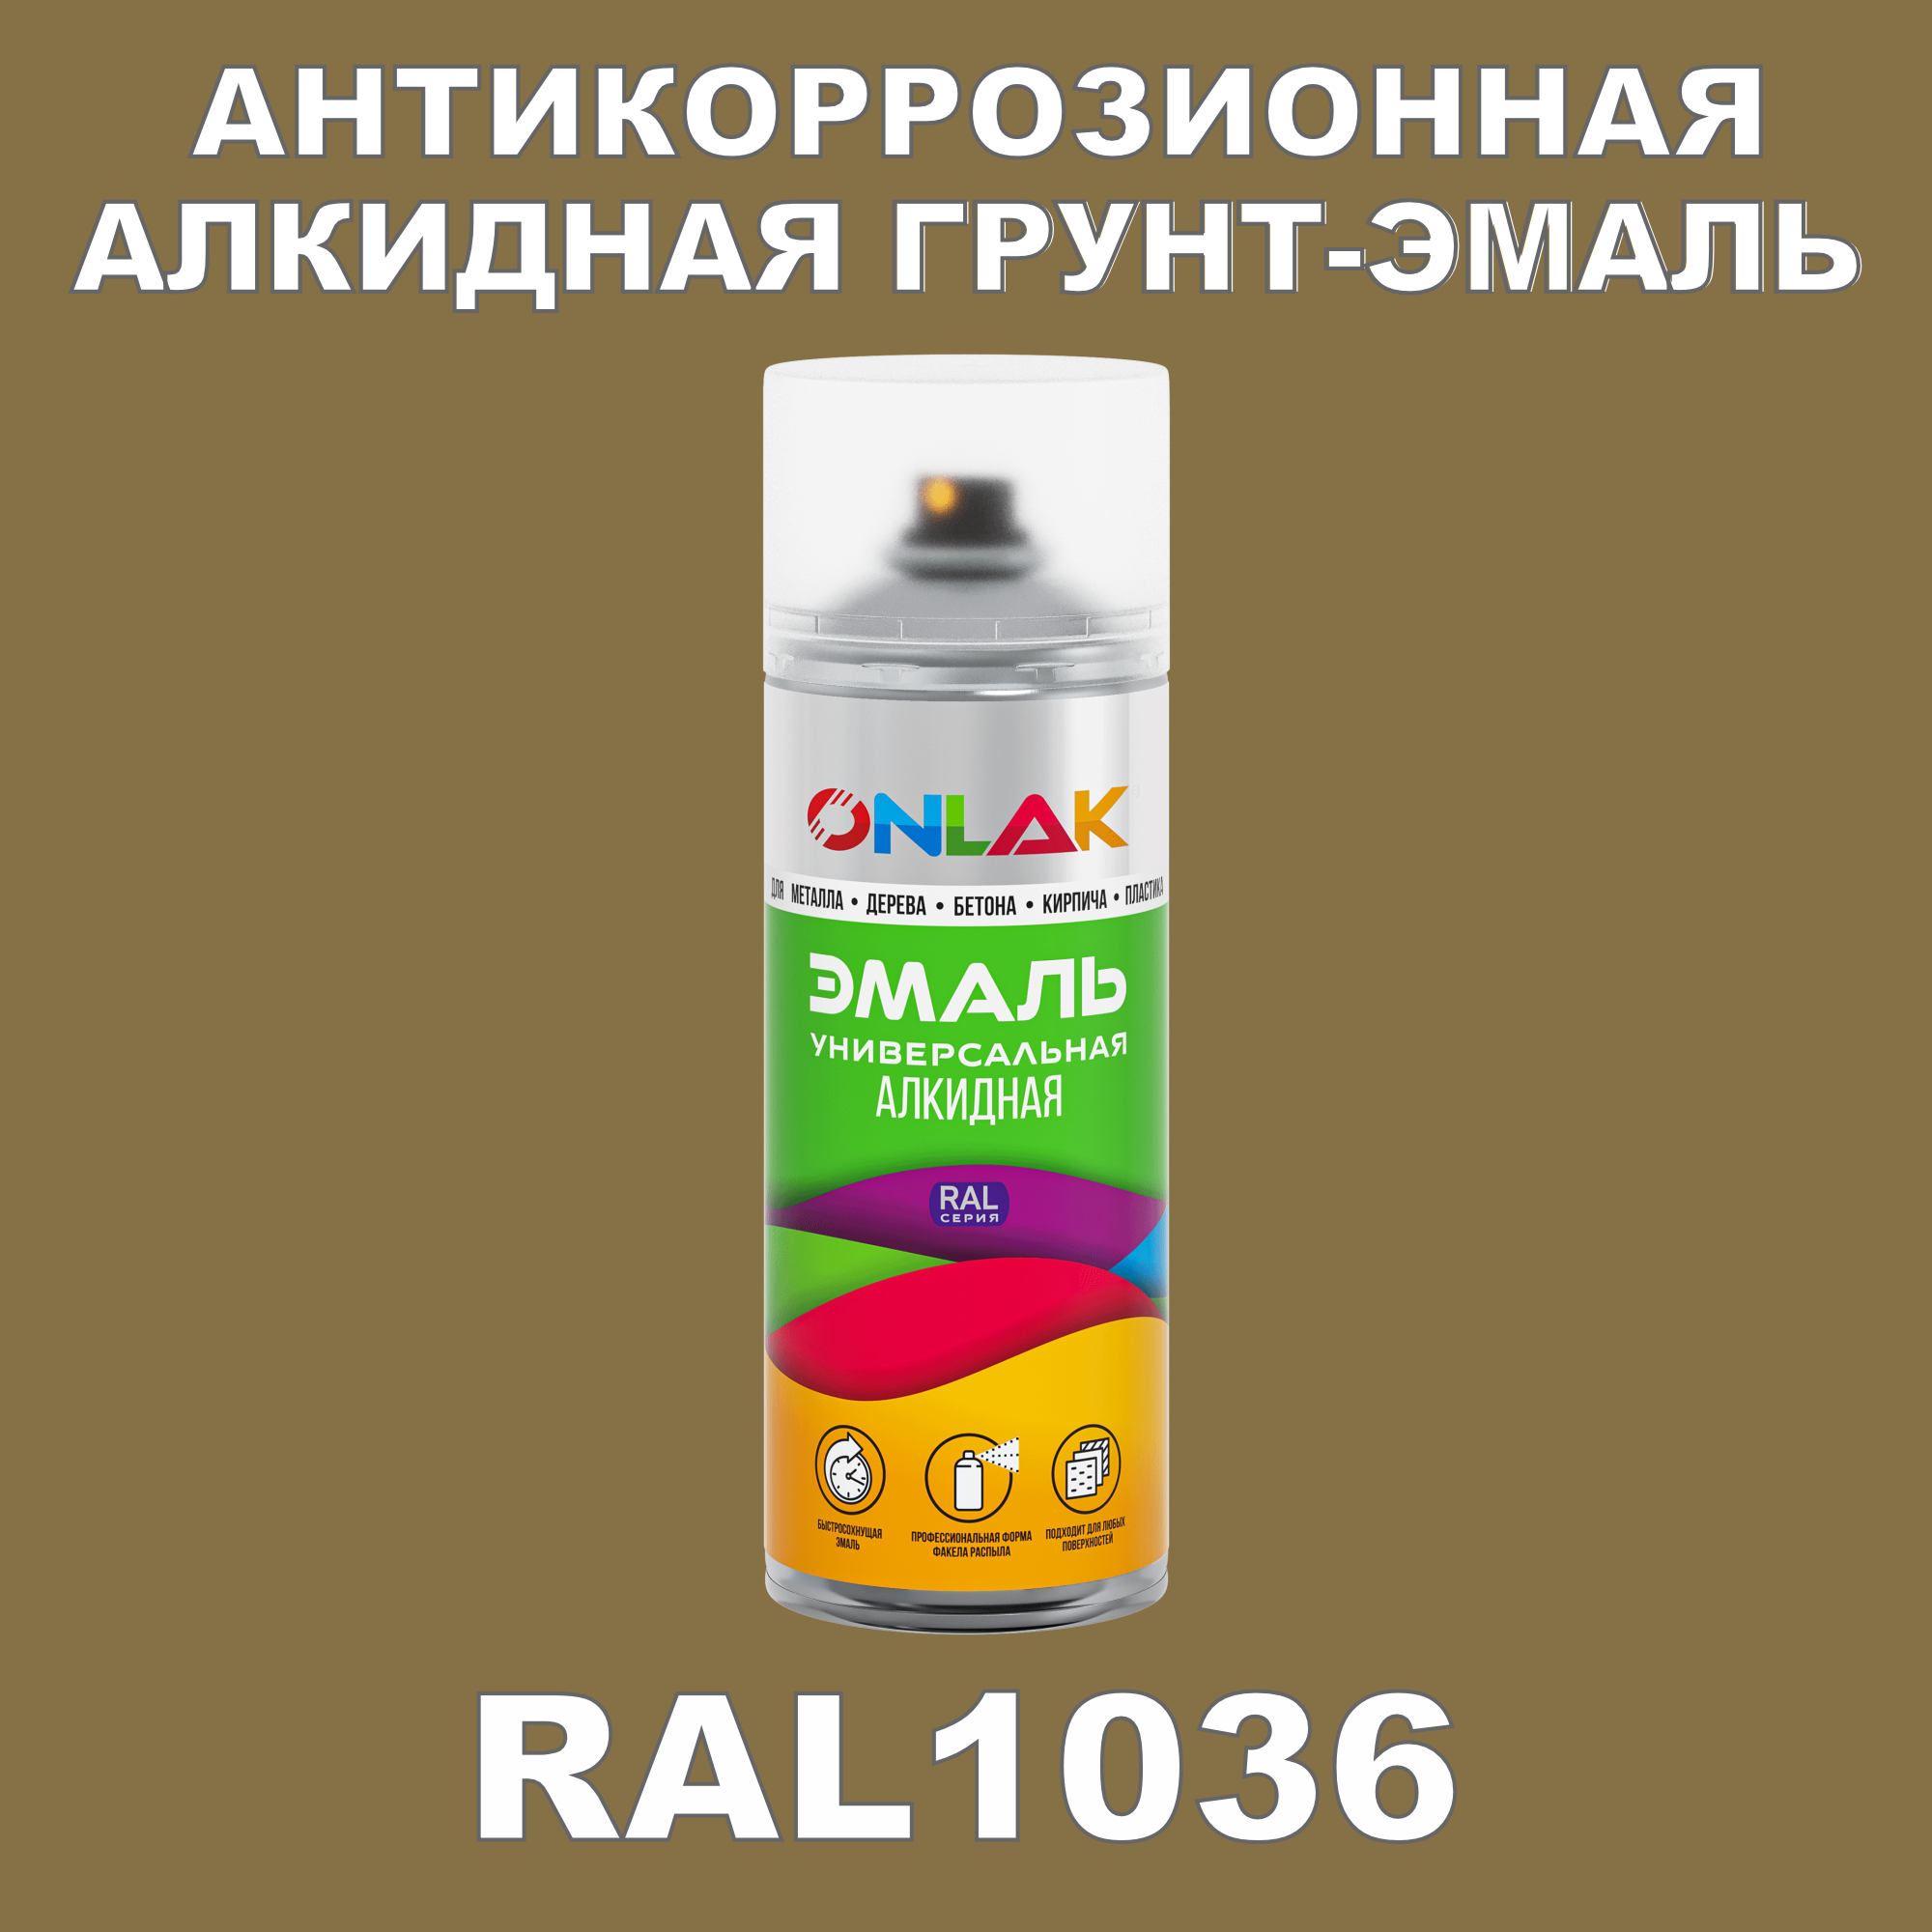 Антикоррозионная грунт-эмаль ONLAK RAL1036 полуматовая для металла и защиты от ржавчины